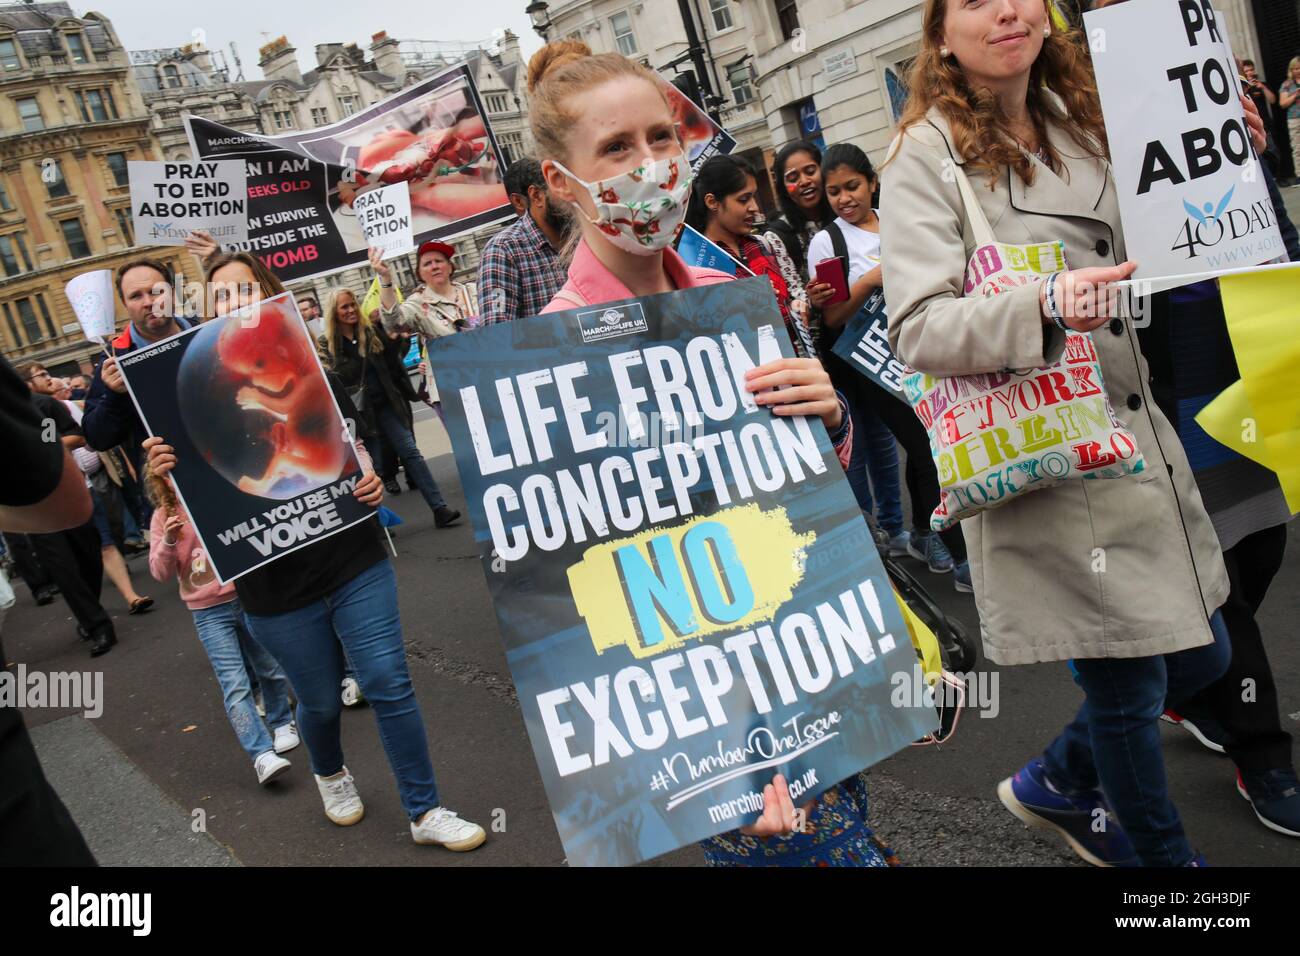 LONDRES, ANGLETERRE - SEPTEMBRE 04 2021, Marche anti-avortement pour la vie manifestation dans le centre de Londres crédit: Lucy North/Alay Live News Banque D'Images